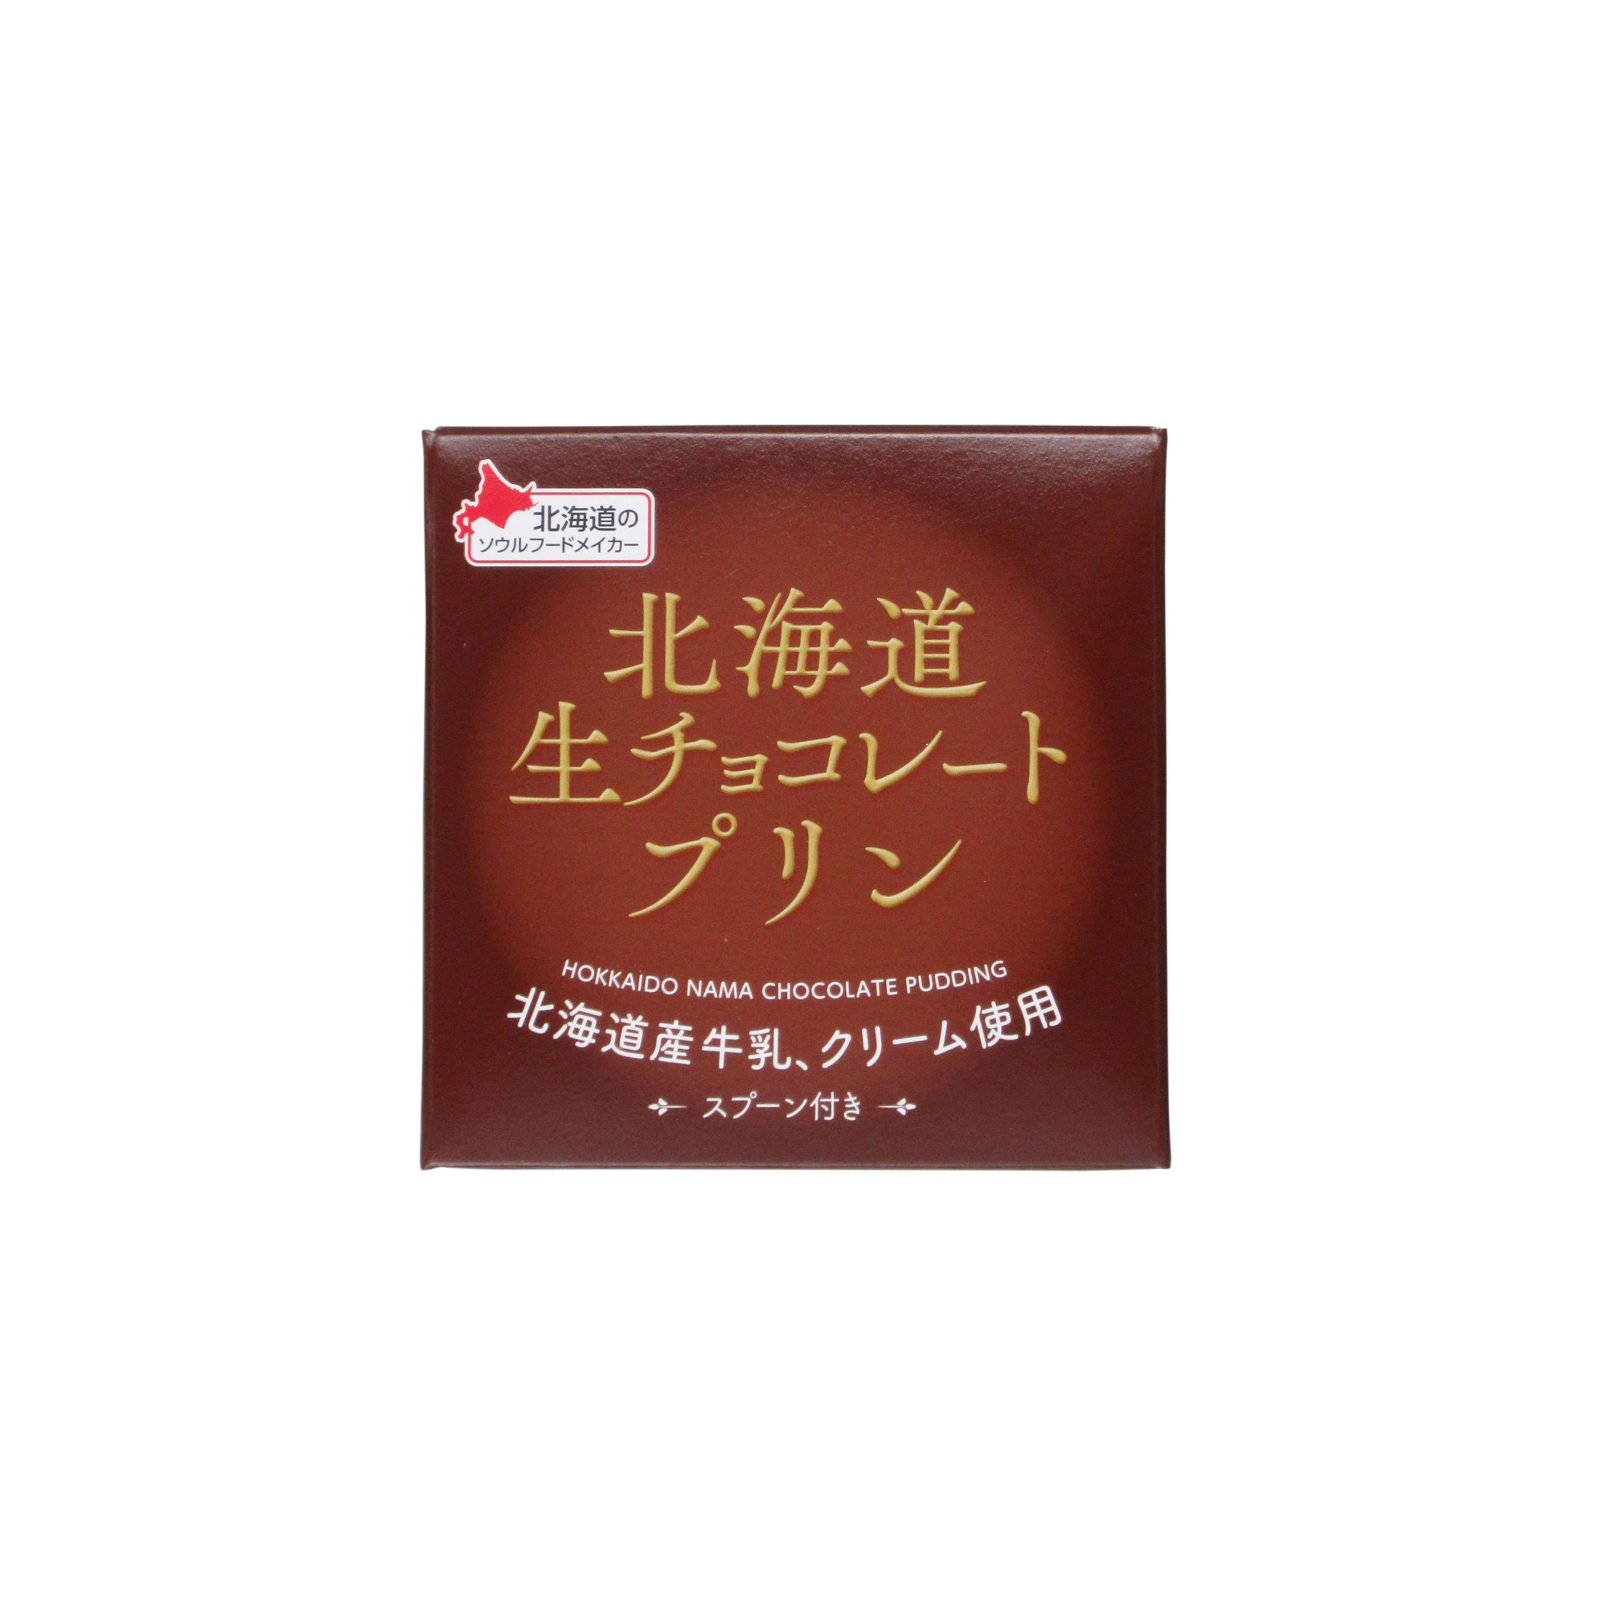 北海道生チョコレートプリン 1個入 78g